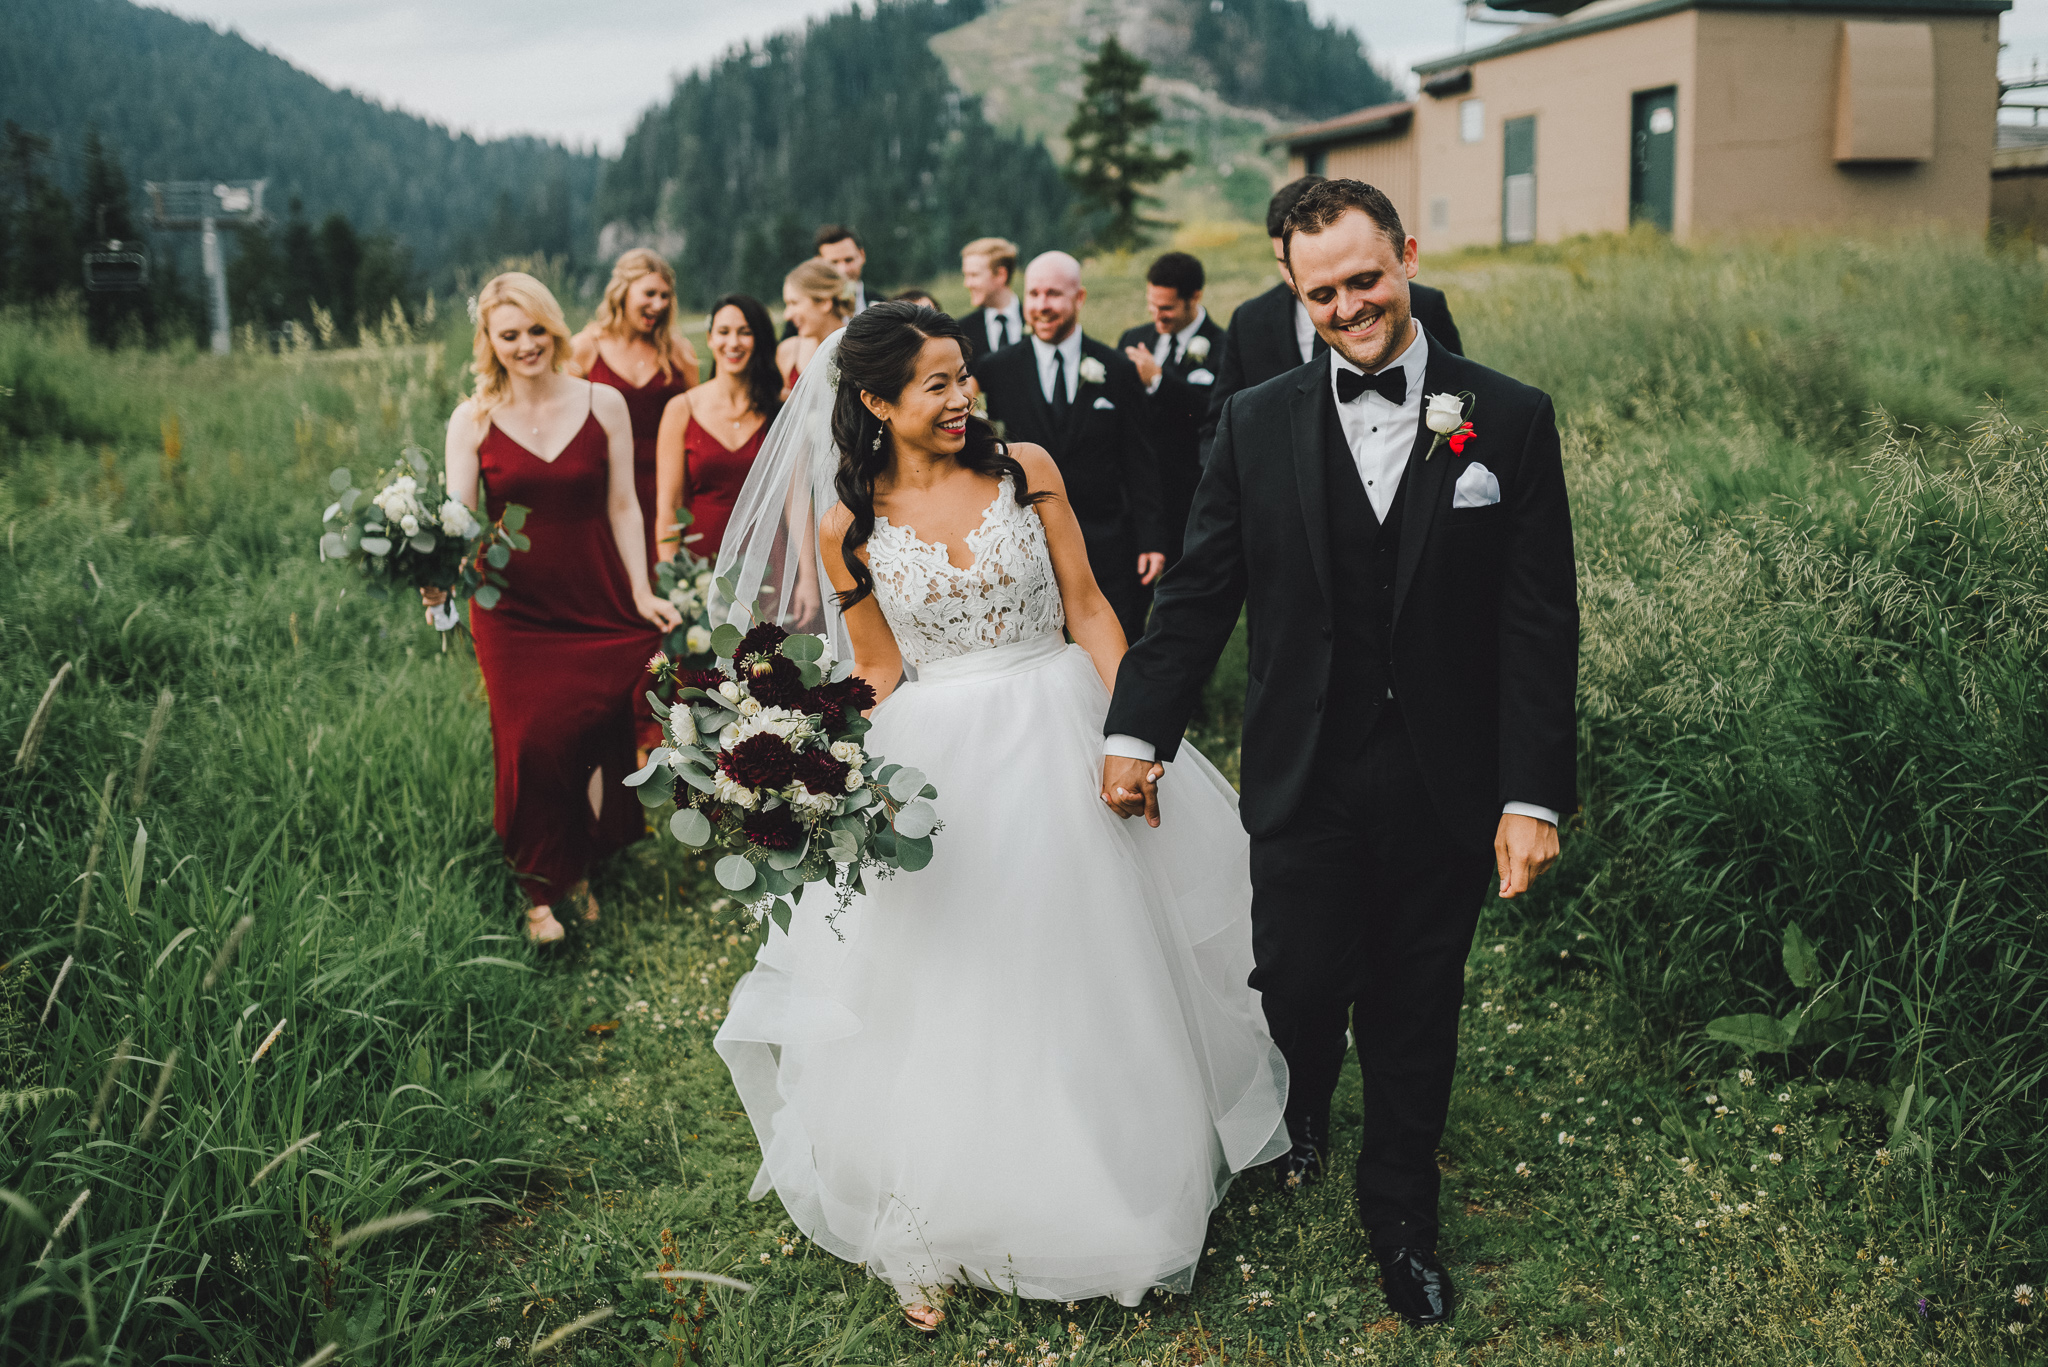 thekoebels-grouse-mountain-wedding (54 of 110).jpg